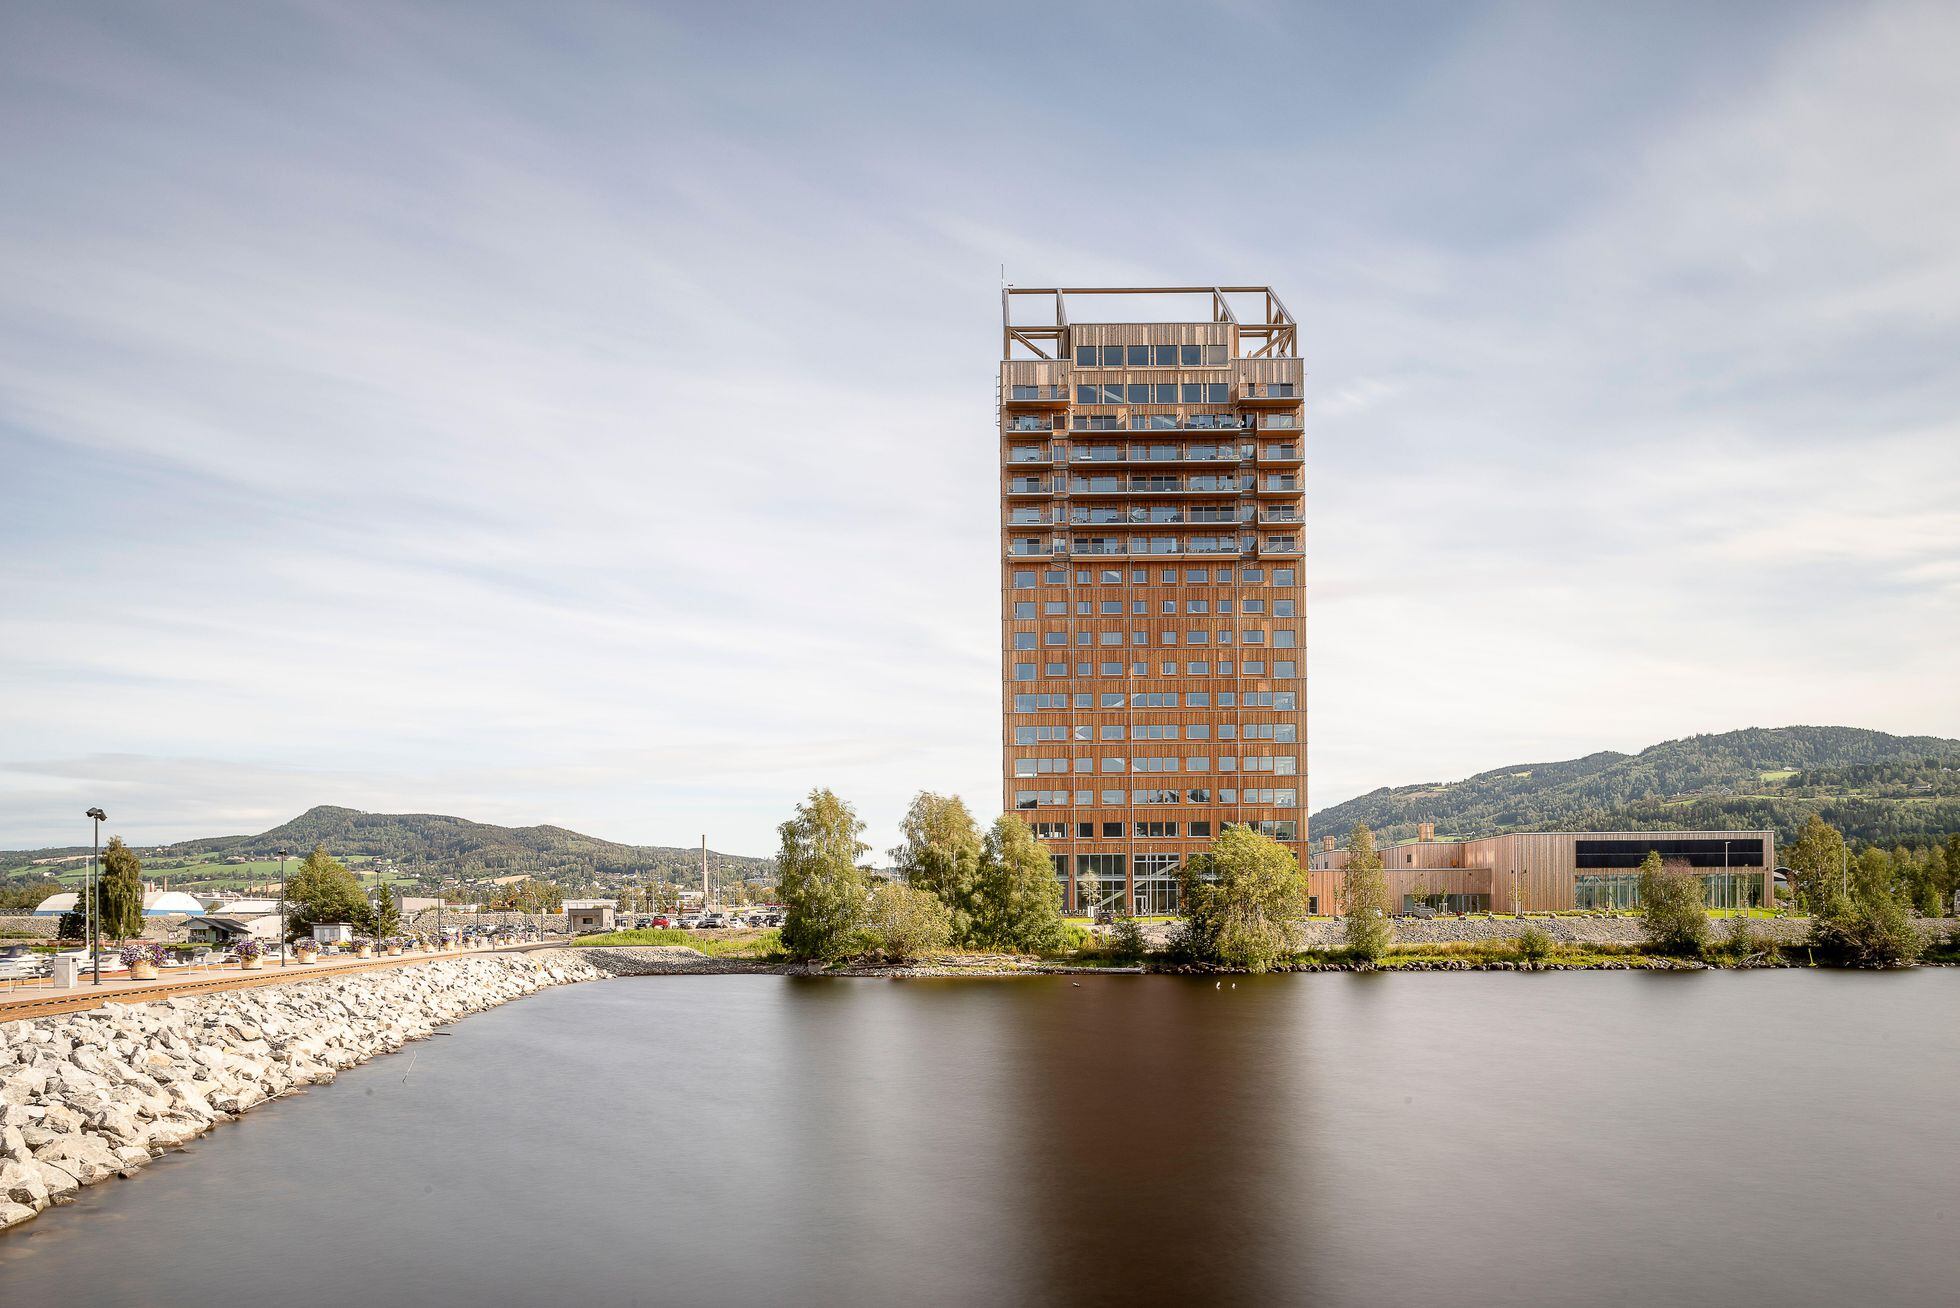 Mjøstårnet, la torre del Lago Mjøsa, en el pequeño municipio noruego de Brumunddal, ostenta el actual récord de altura en madera con sus 18 plantas y 85,5 metros. 